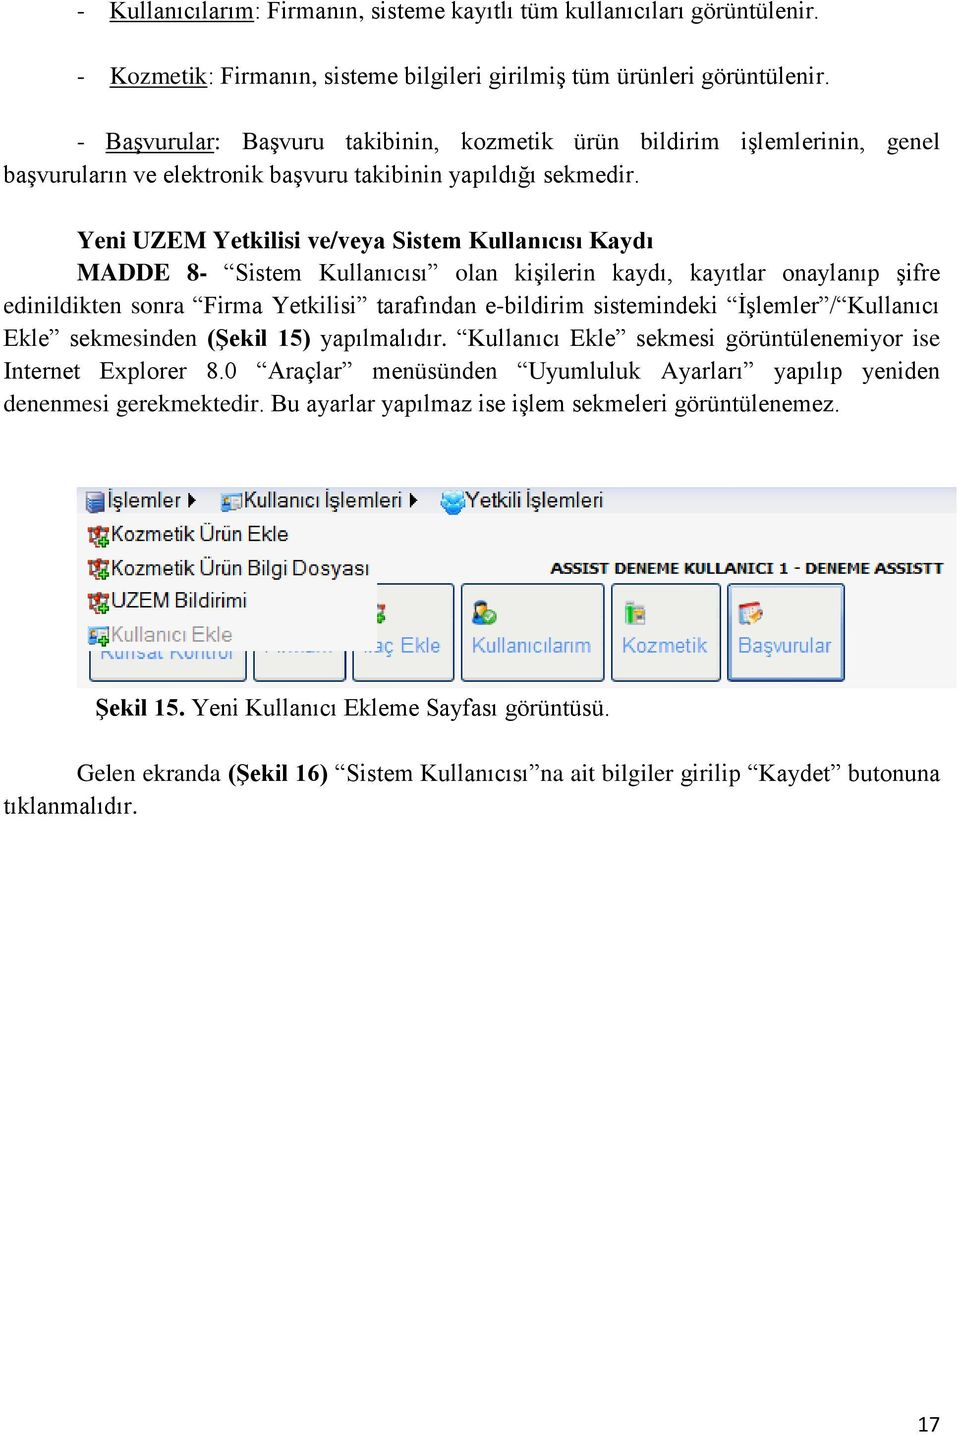 Yeni UZEM Yetkilisi ve/veya Sistem Kullanıcısı Kaydı MADDE 8- Sistem Kullanıcısı olan kişilerin kaydı, kayıtlar onaylanıp şifre edinildikten sonra Firma Yetkilisi tarafından e-bildirim sistemindeki